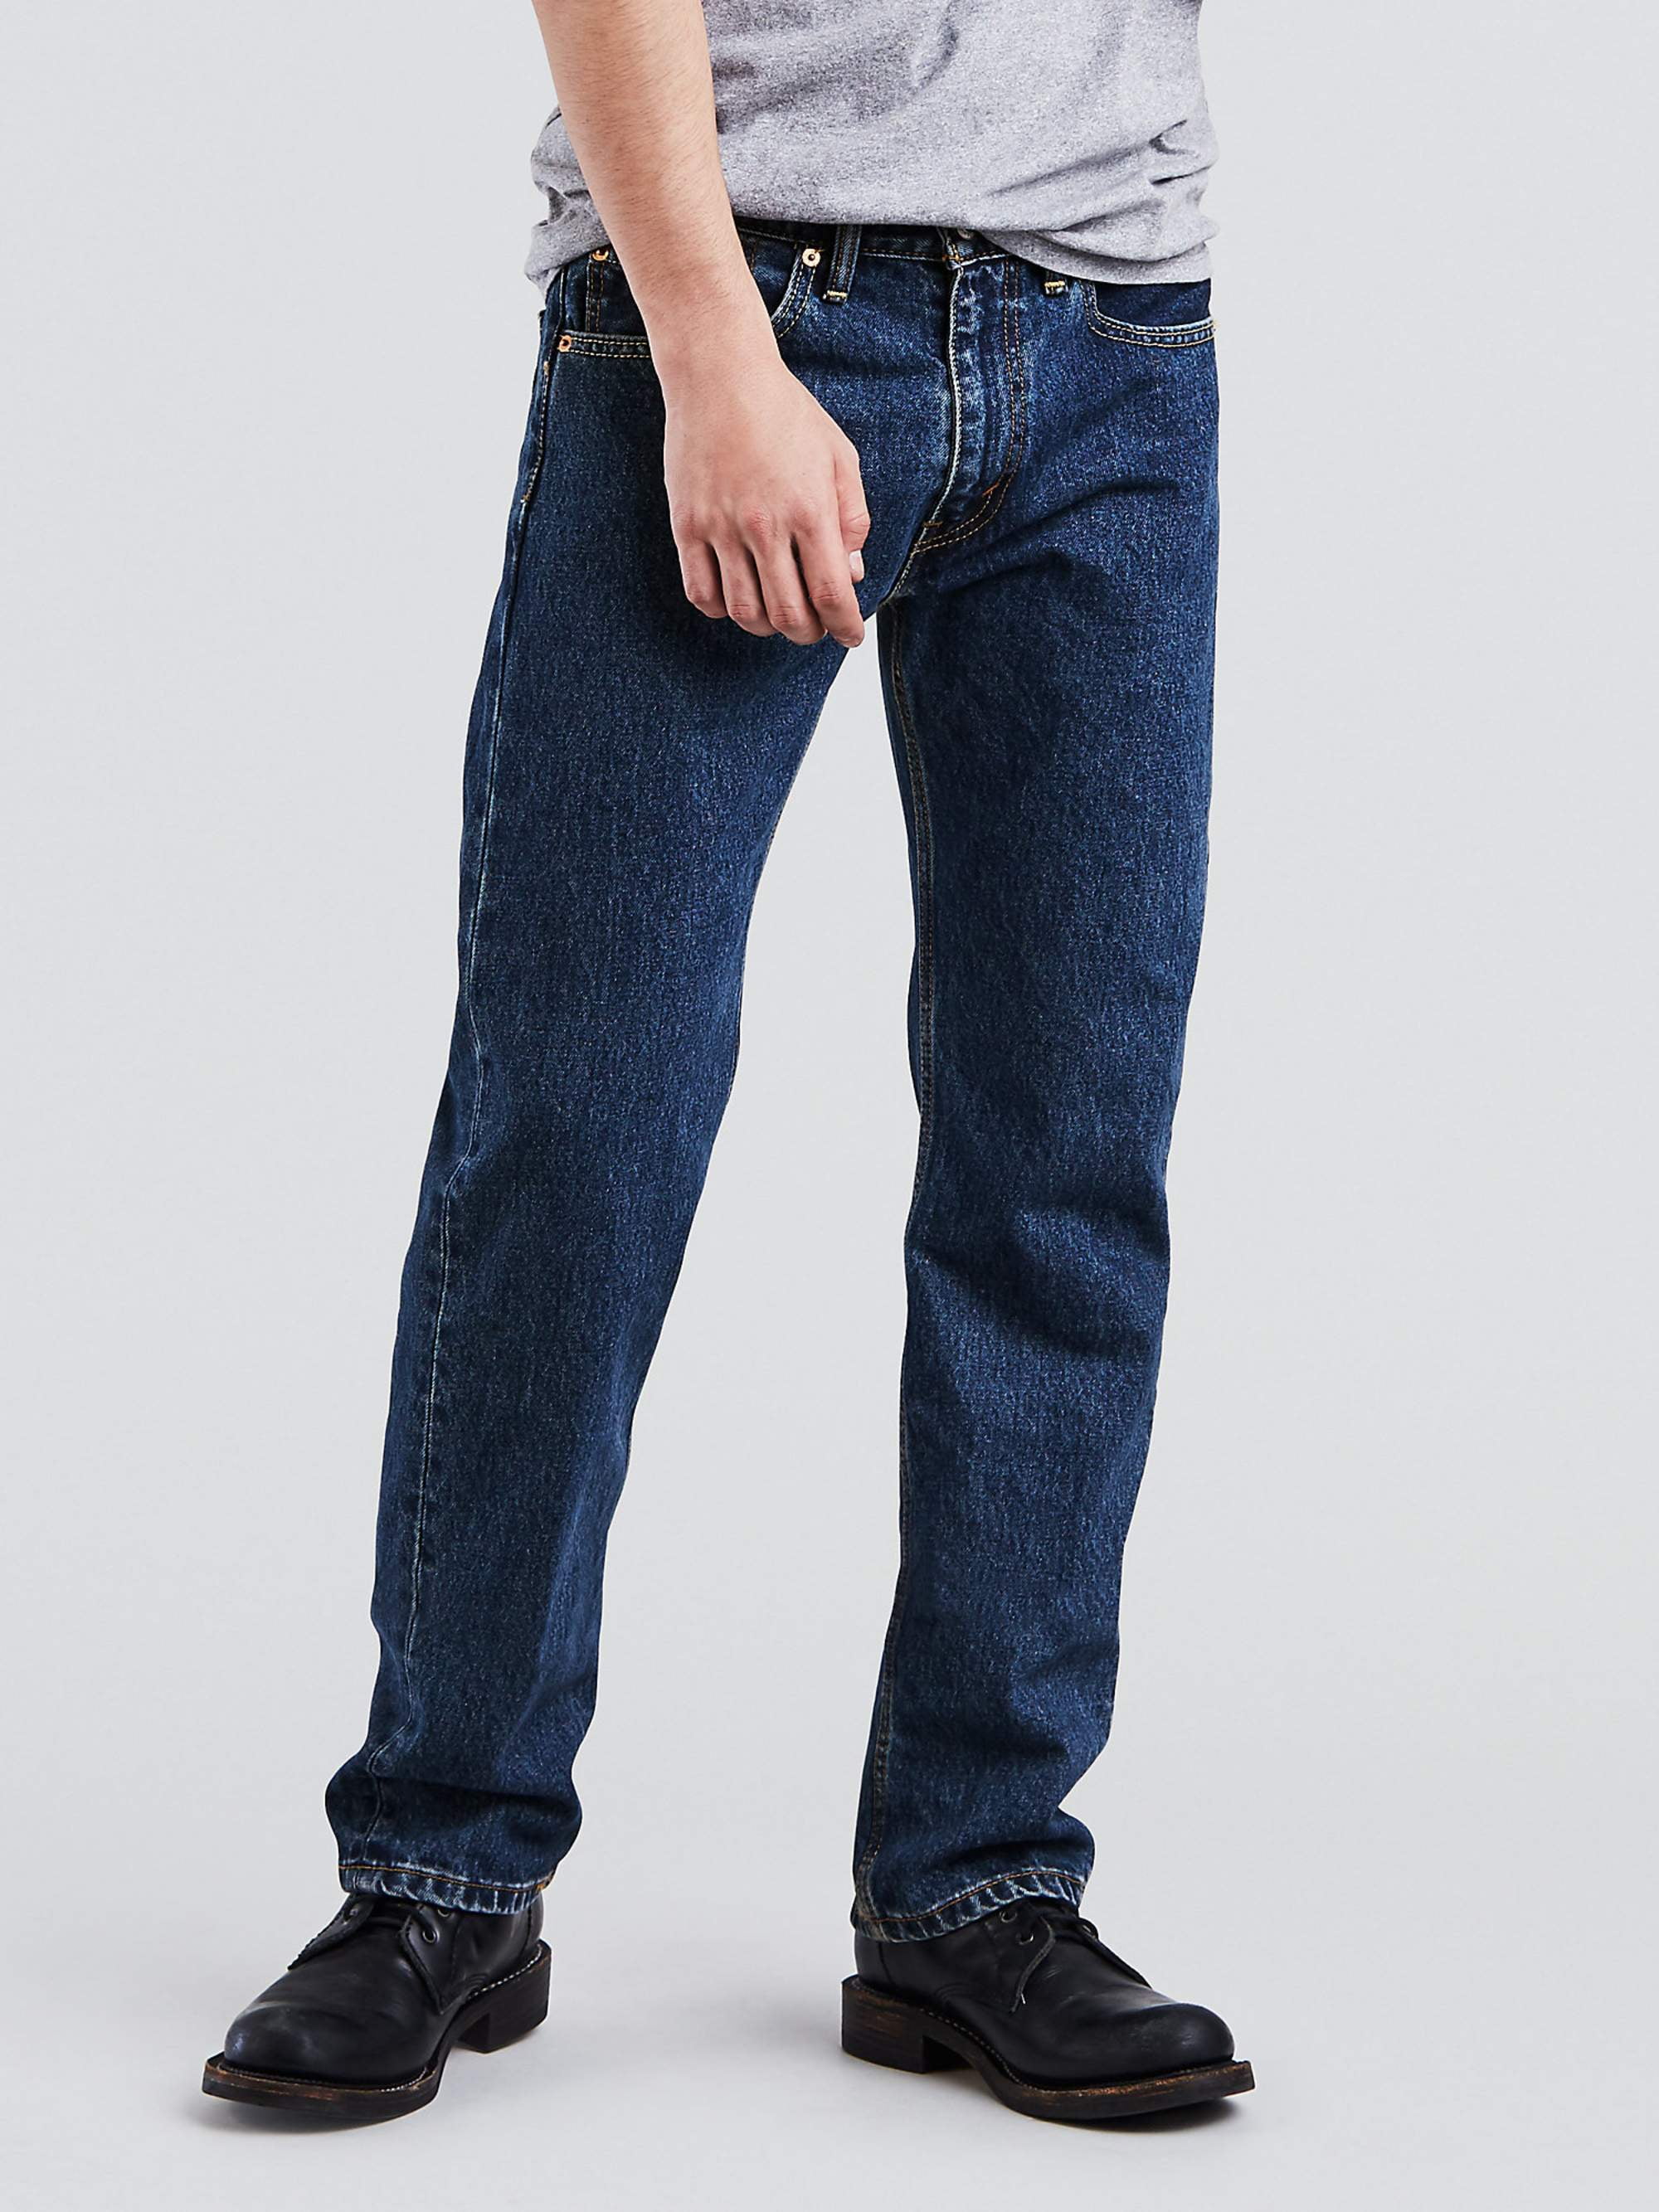 Levi's Men's 505 Regular Fit Jeans - Walmart.com